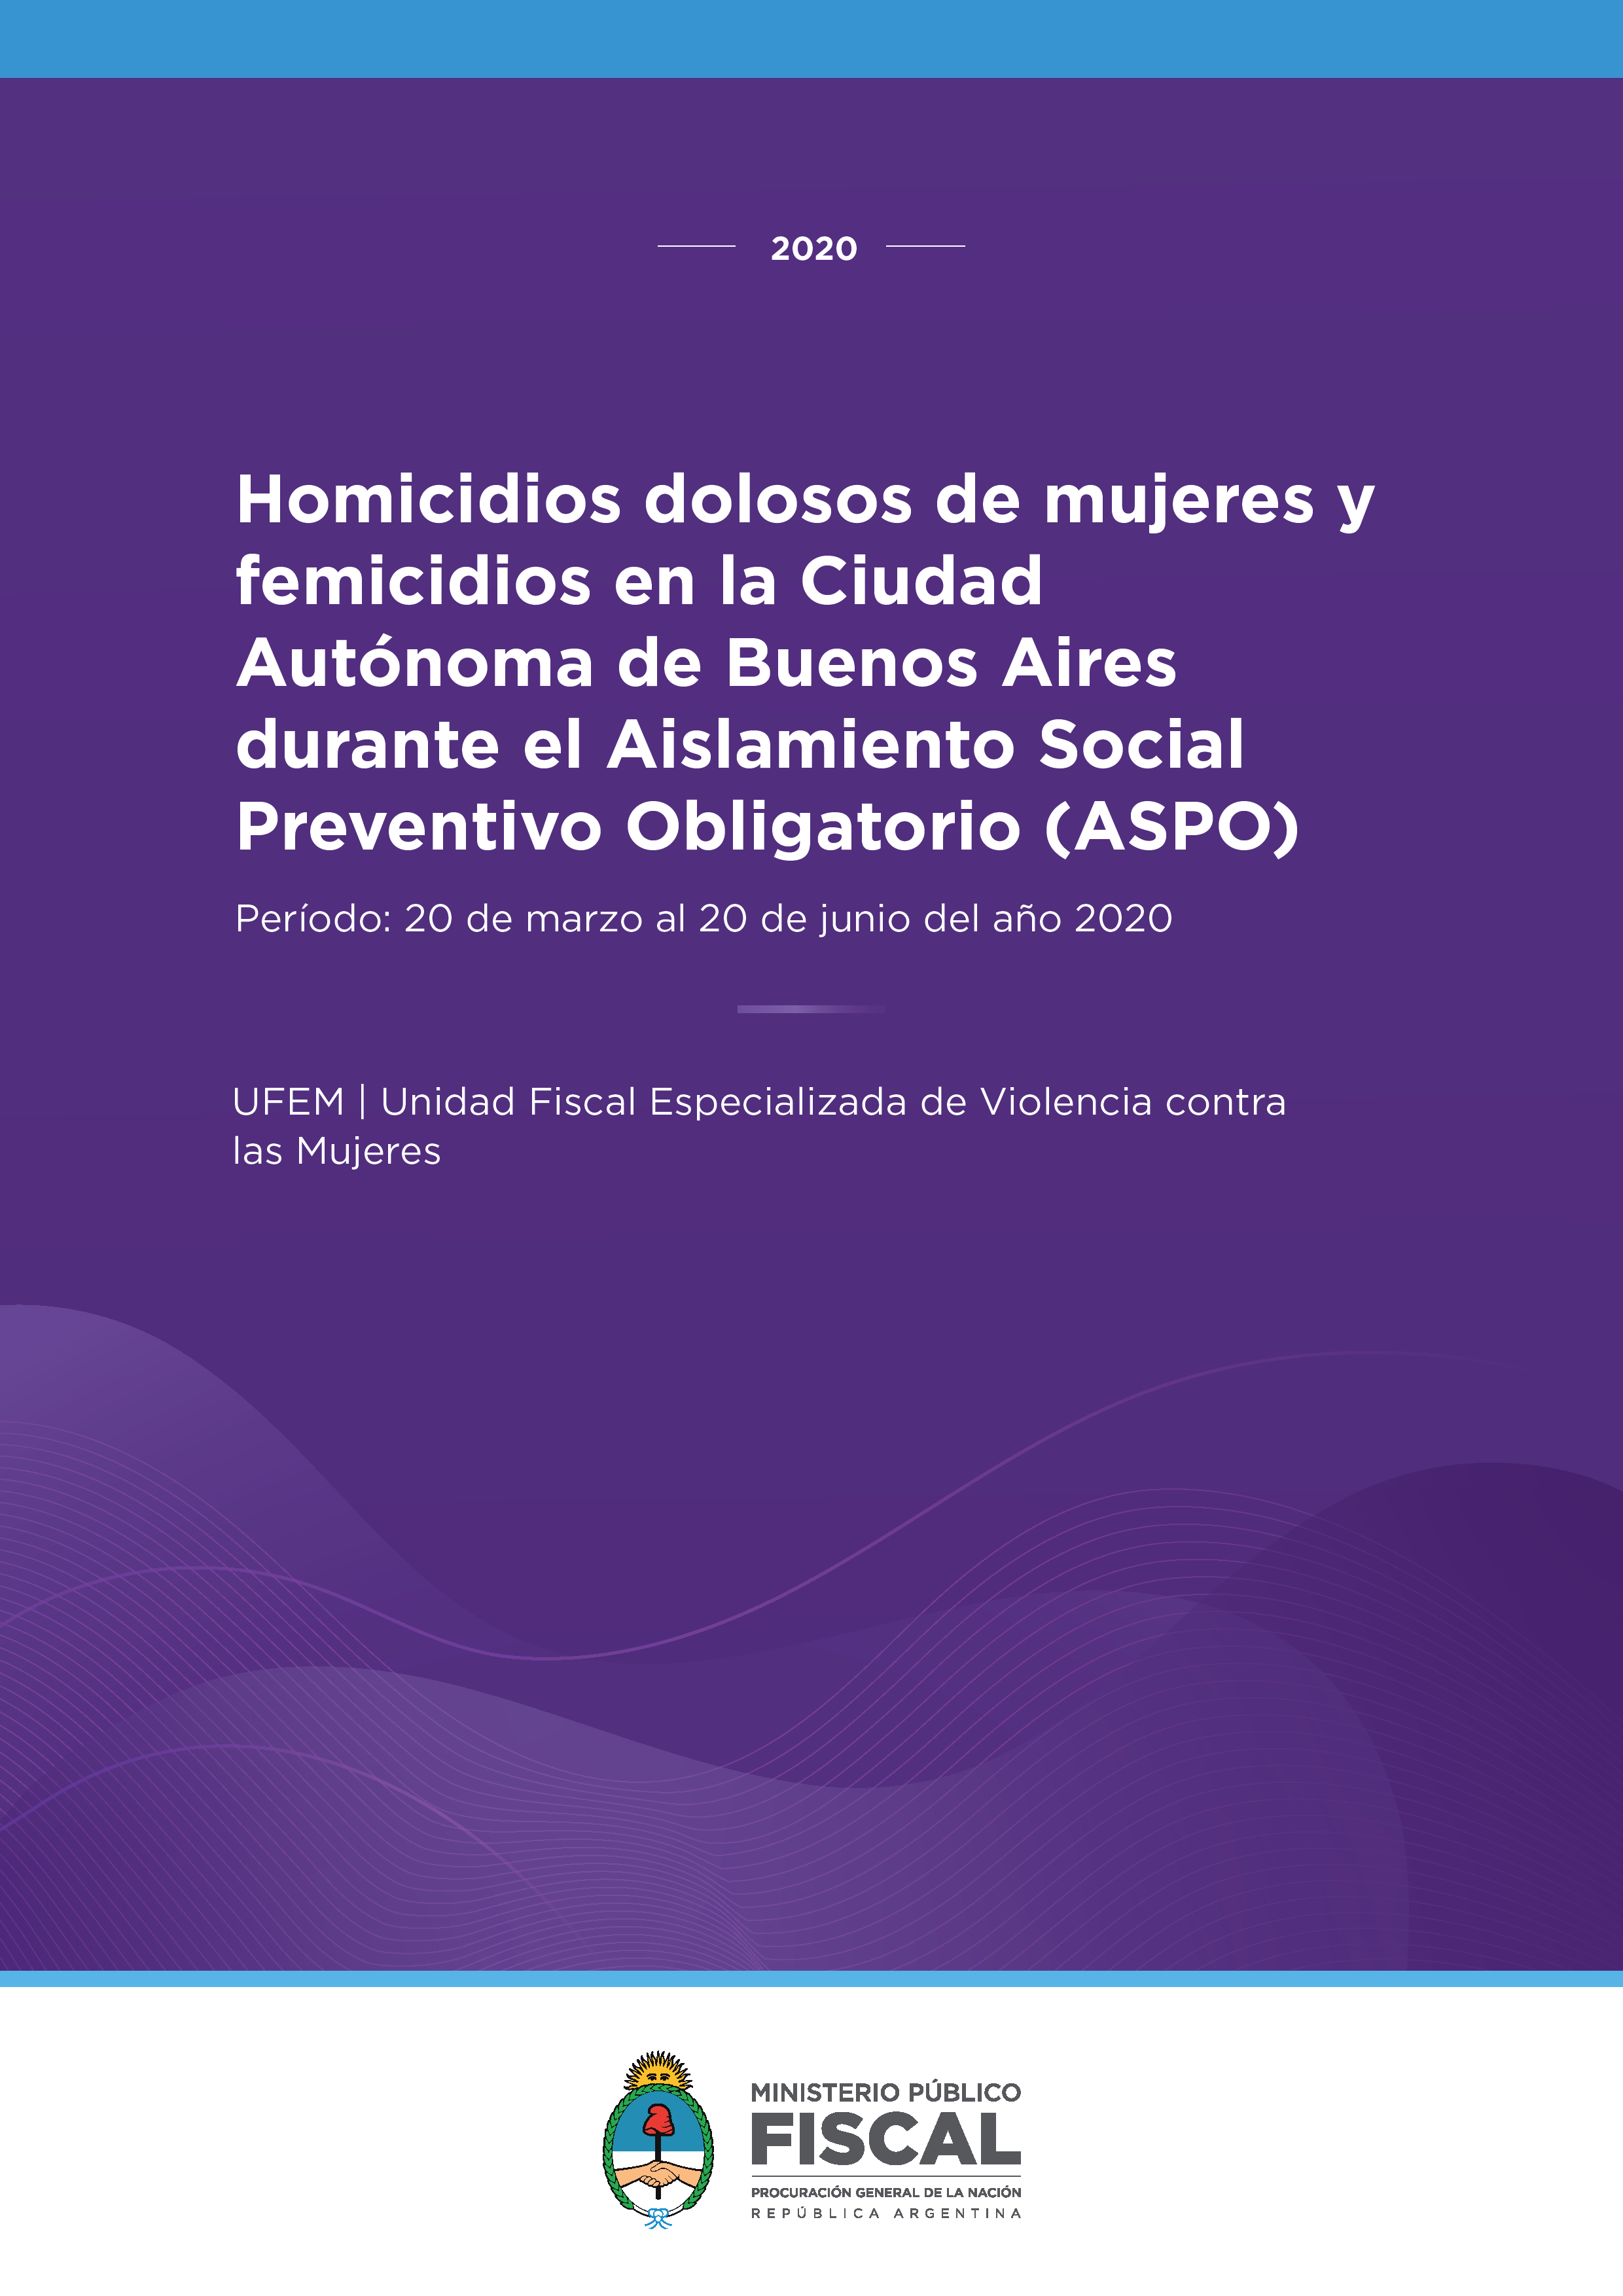 Homicidios dolosos de mujeres y femicidios en la Ciudad Autónoma de Buenos Aires durante el Aislamiento Social Preventivo Obligatorio (ASPO). Período: 20 de marzo al 20 de junio del año 2020